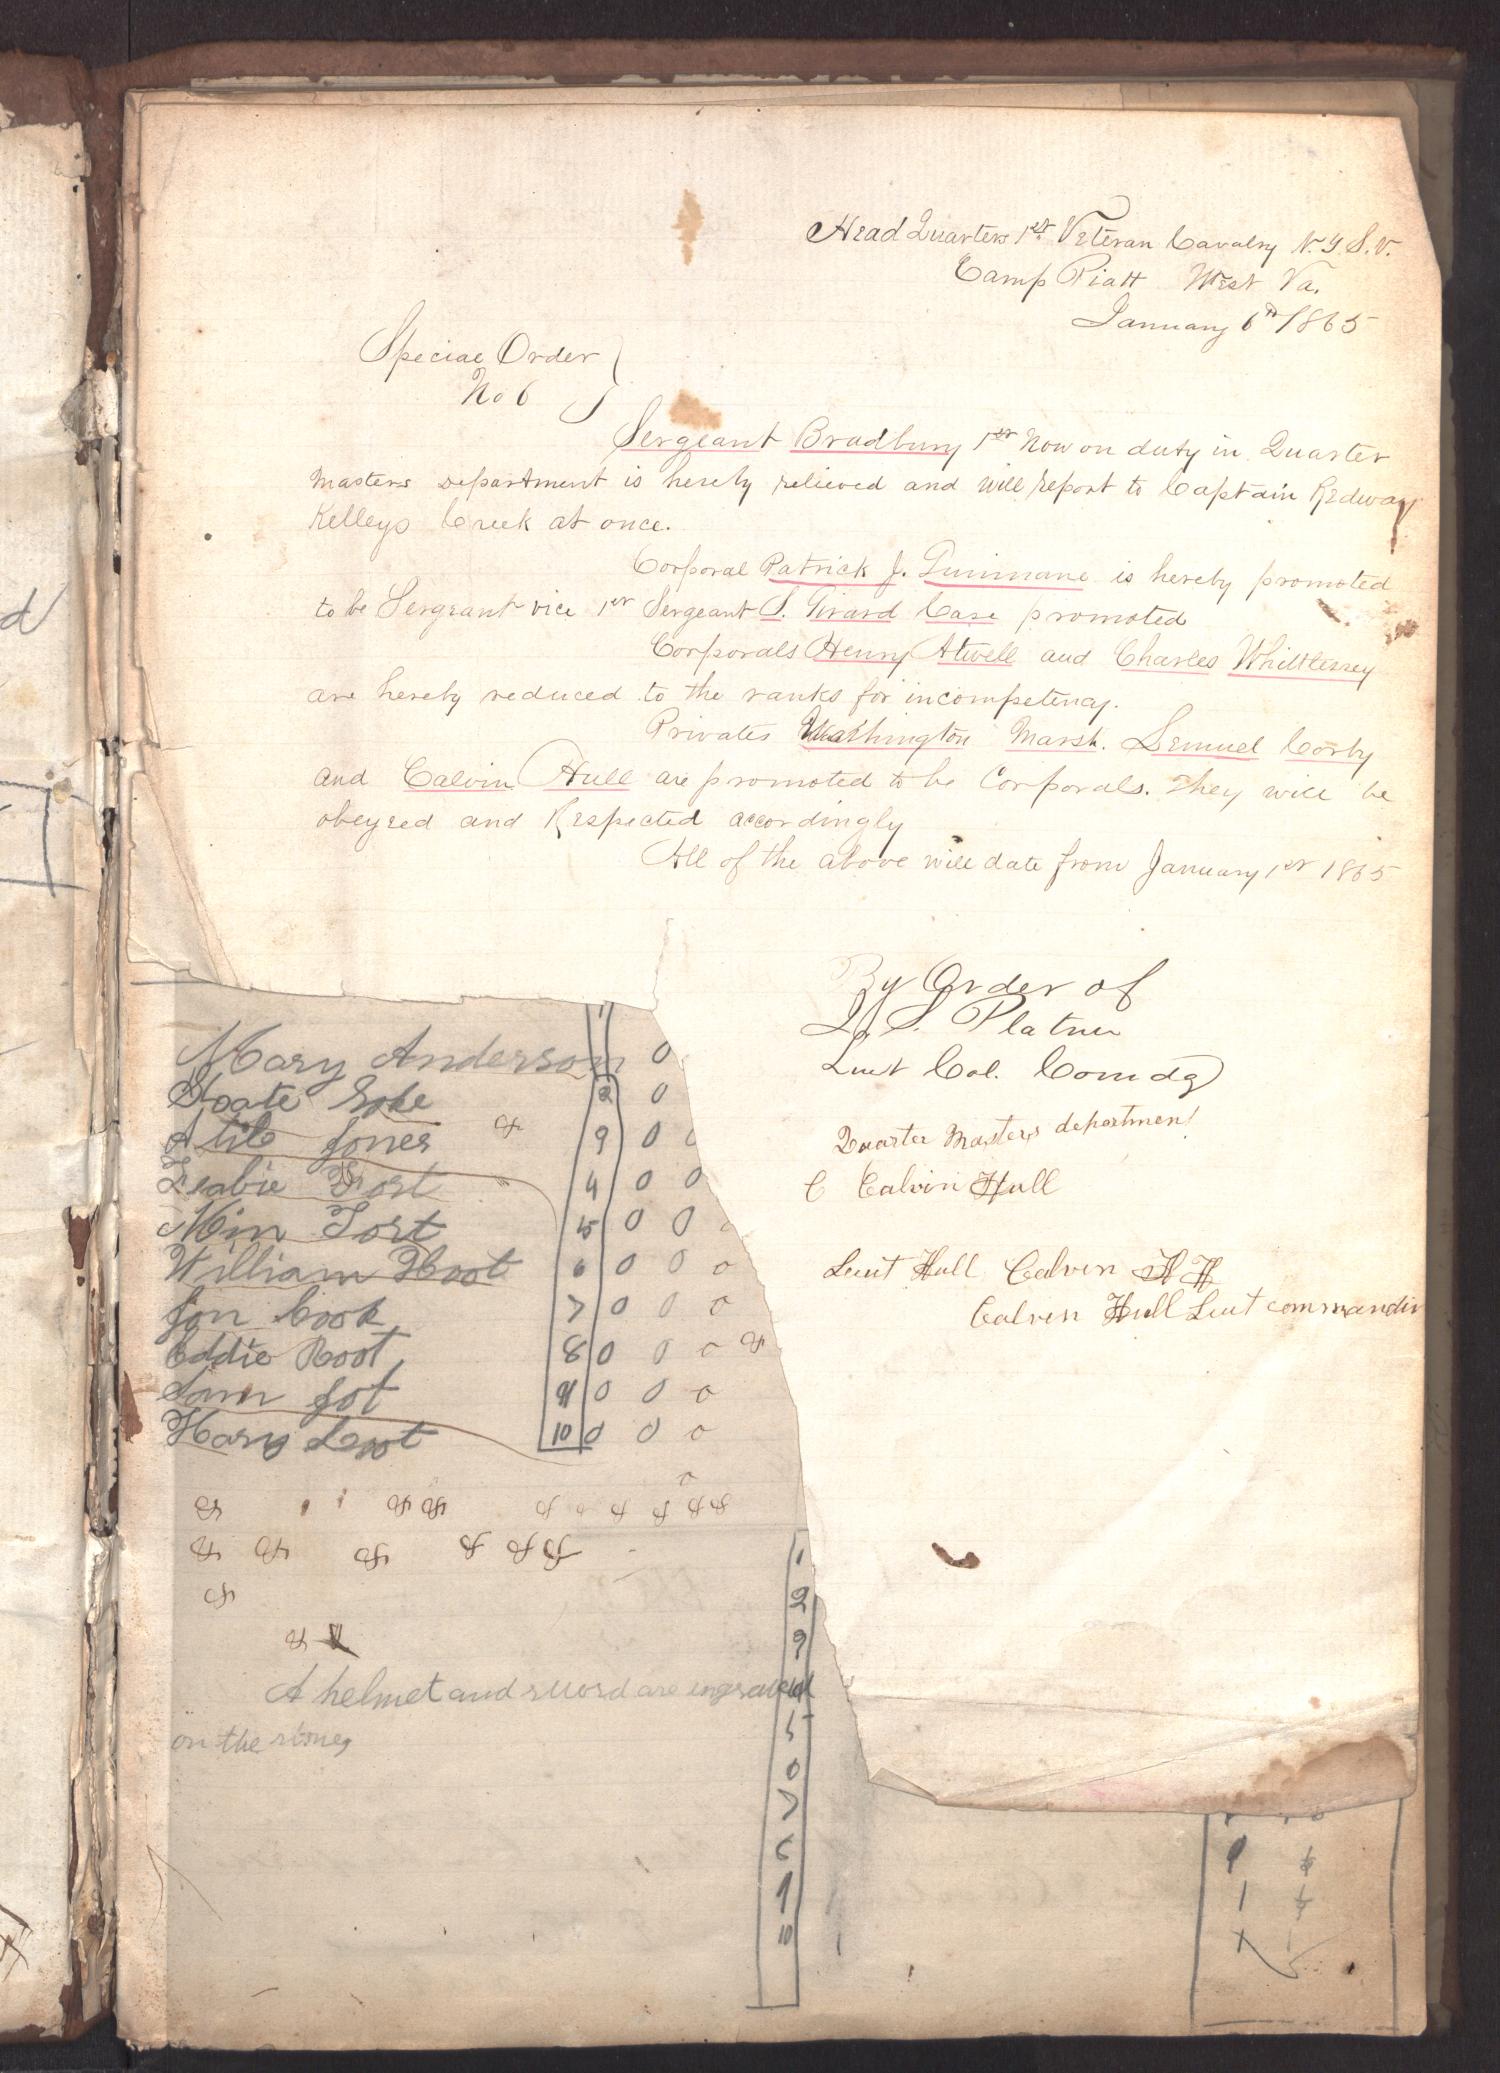 [Company Orders Book, June 15, 1864-June 1865]
                                                
                                                    1
                                                